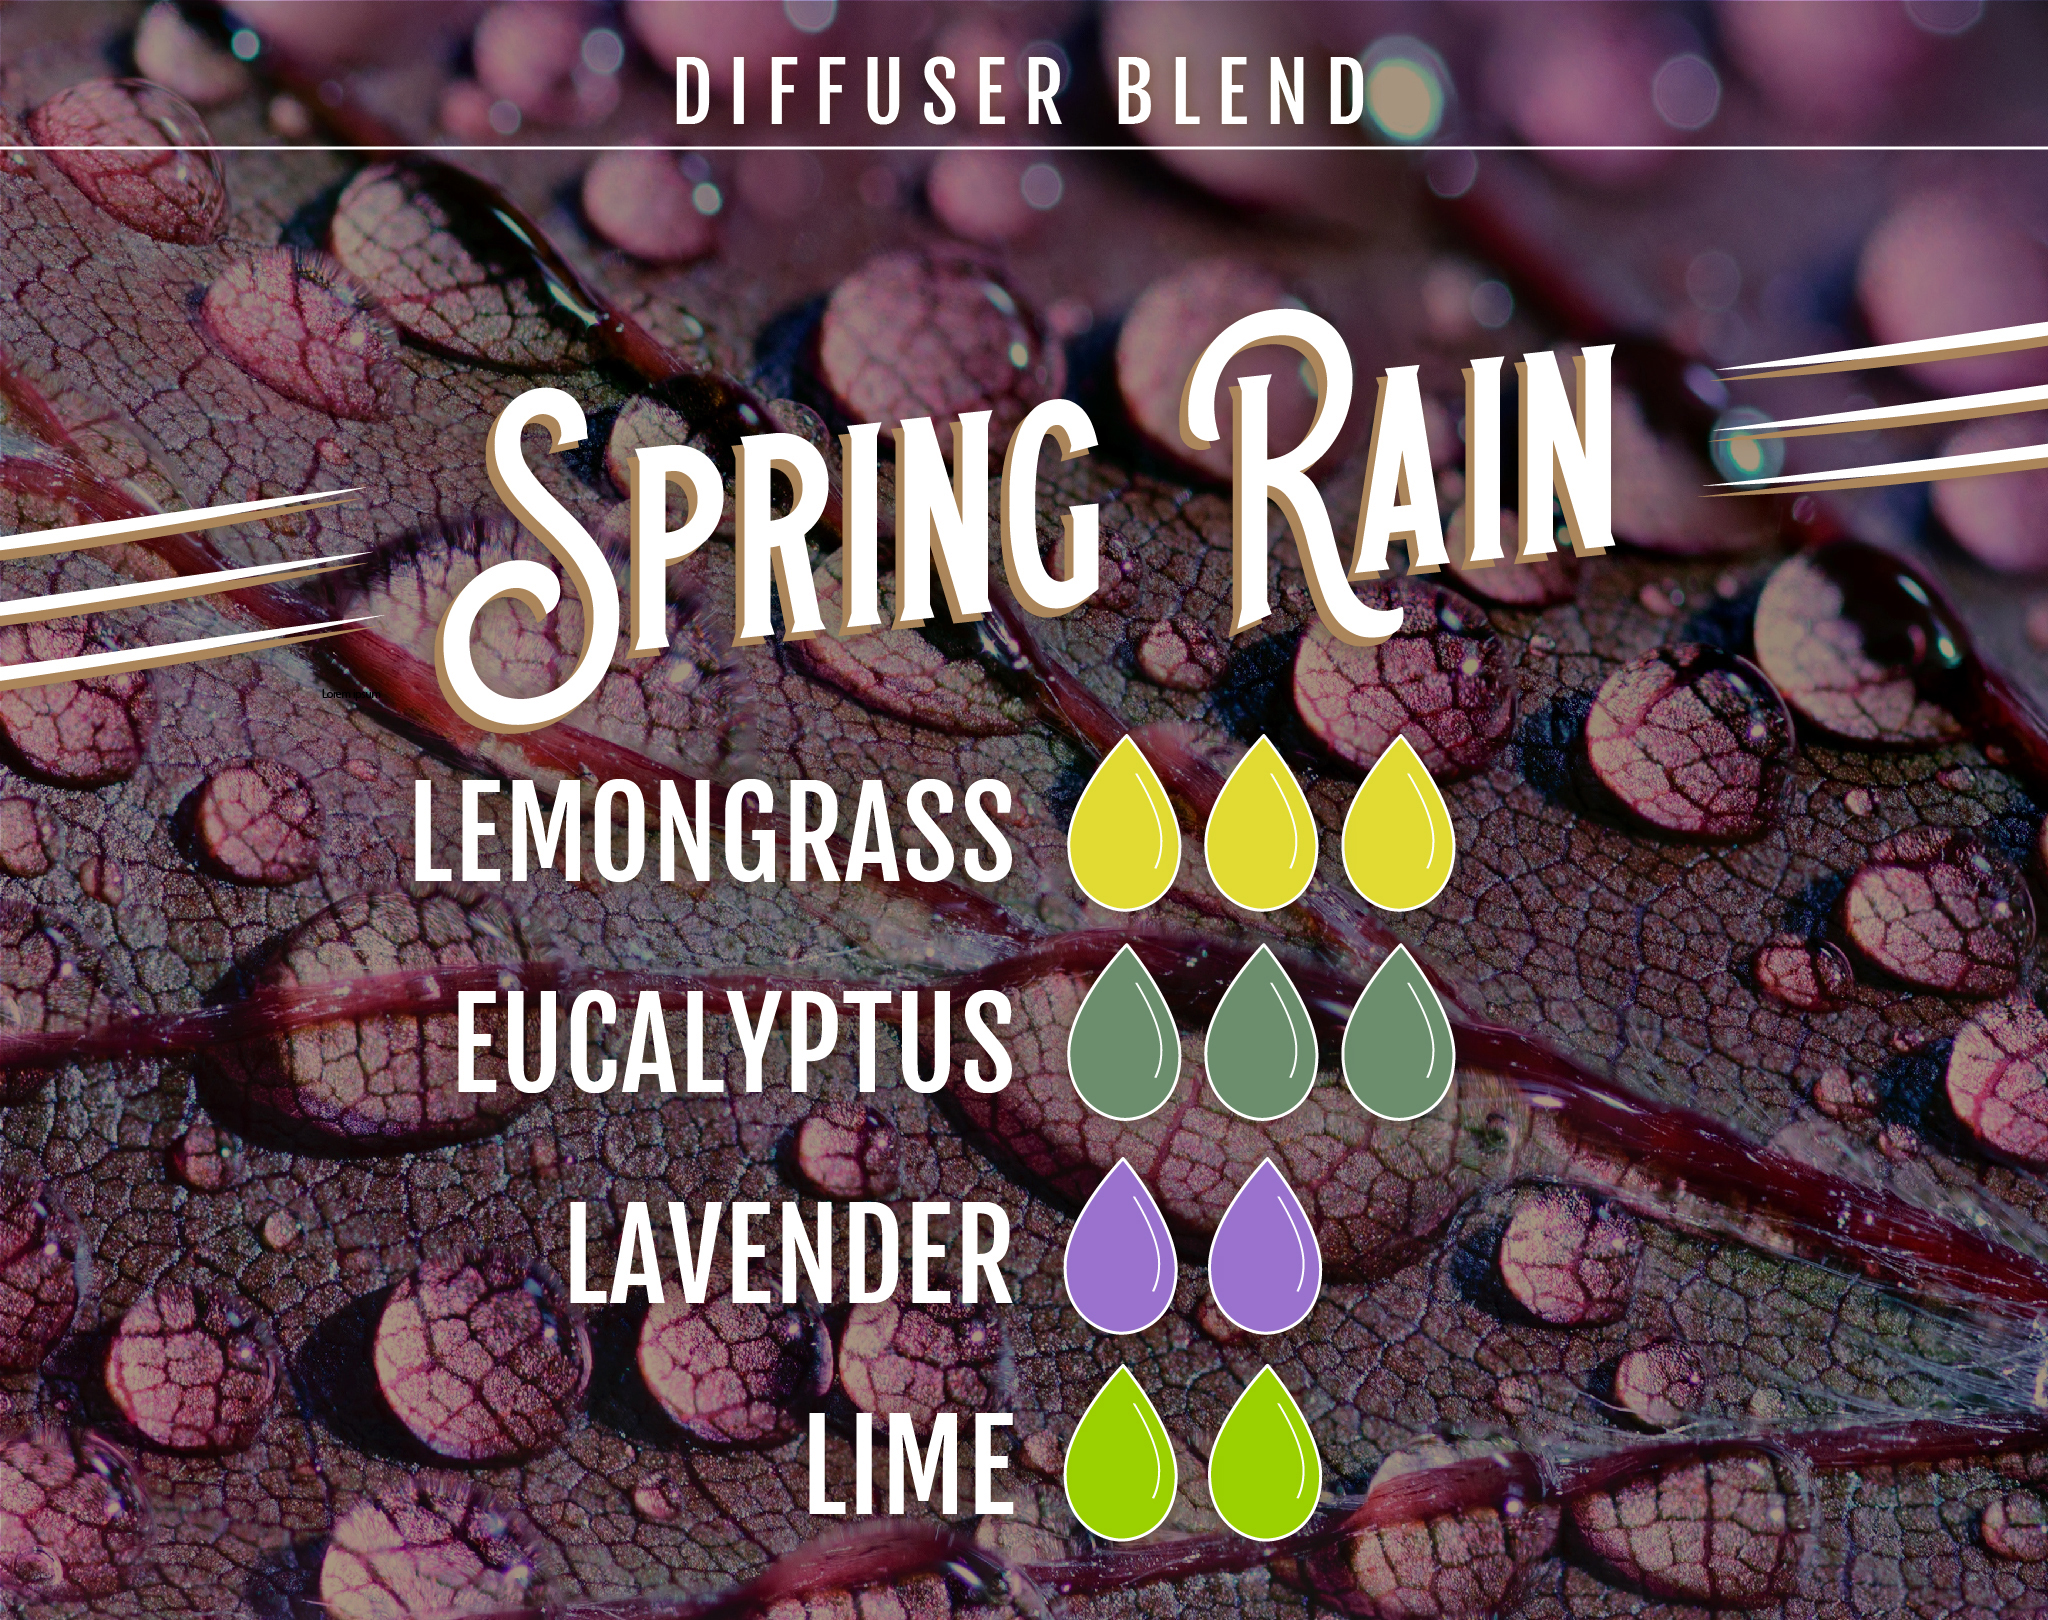 Spring Rain Diffuser Blend - 3 Drops of Lemongrass EO, 3 Drops of Eucalyptus EO, 2 Drops of Lavender, 2 Drops of Lime EO